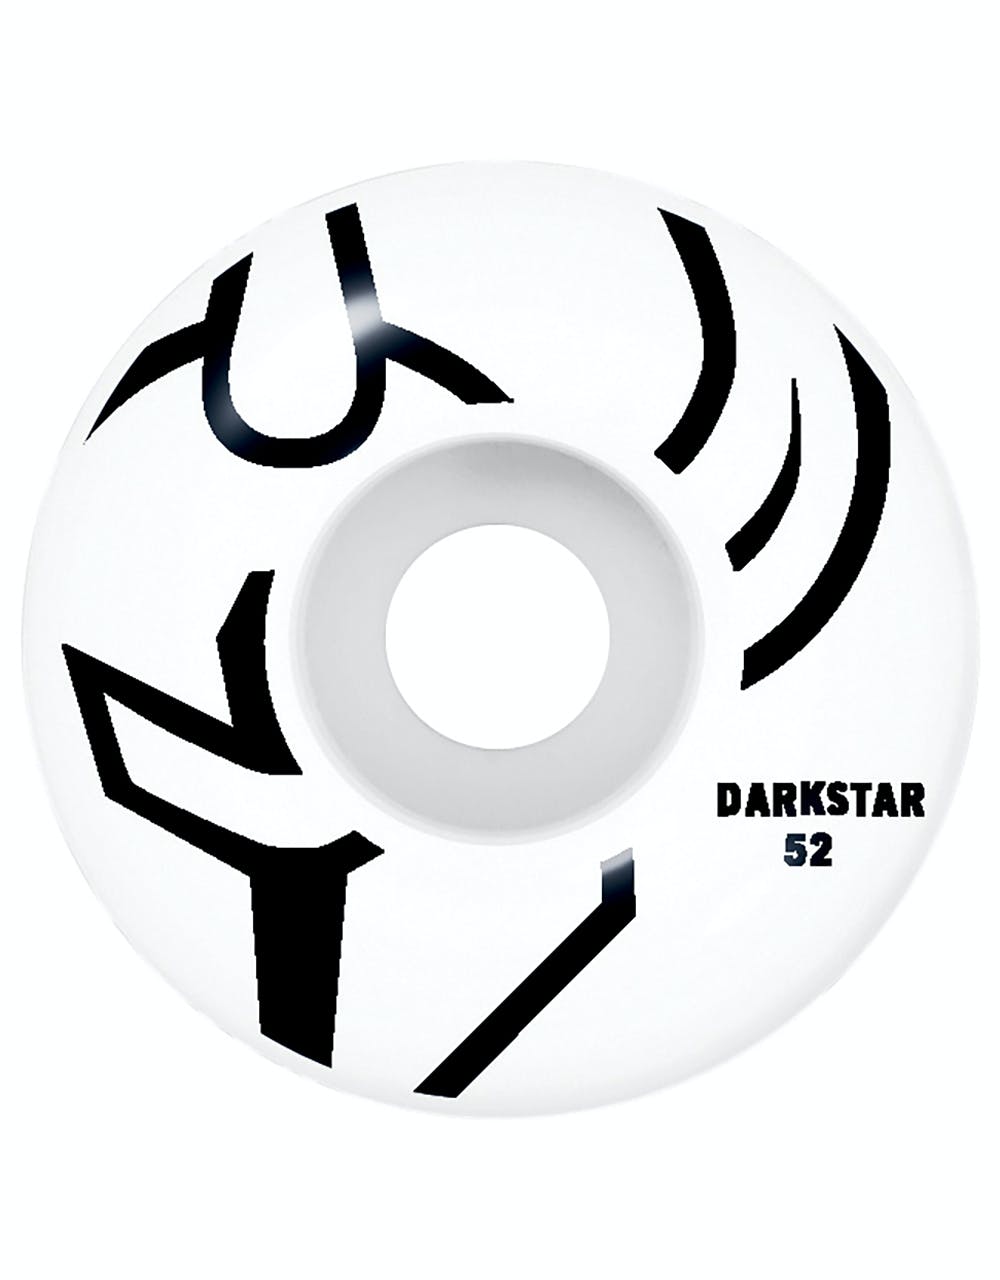 Darkstar Eclipse Premium Complete Skateboard - 7.625"